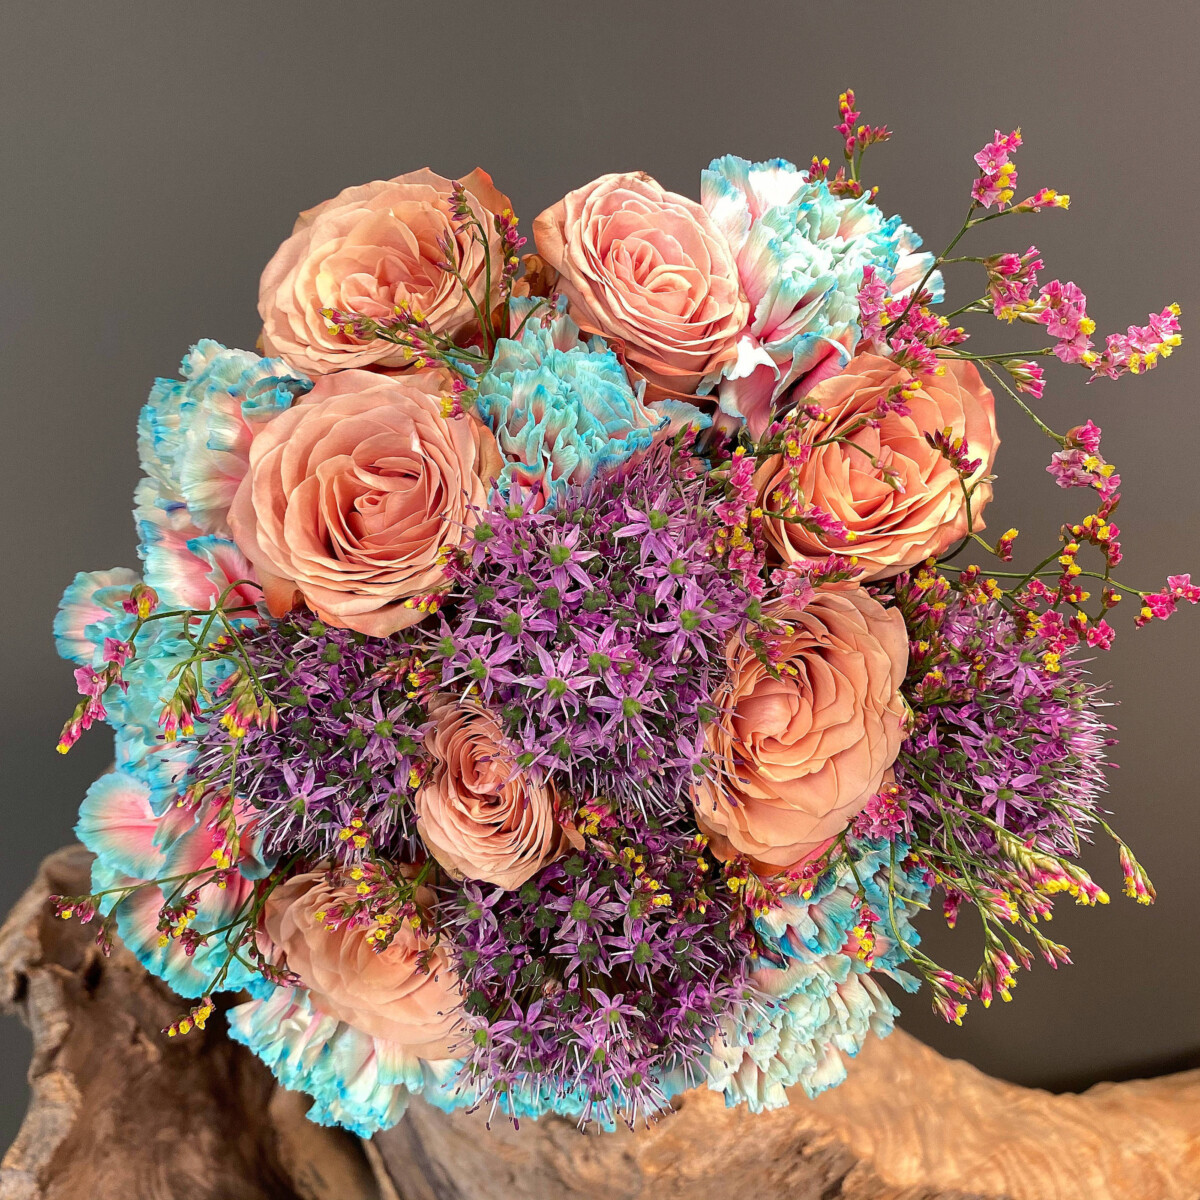 Νυφική Ανθοδέσμη Γάμου μοντέρνα από δίχρωμα Ολλανδικά γαρύφαλλα, άλλιουμ, τριαντάφυλλα cappuccino και λιμόνιουμ.